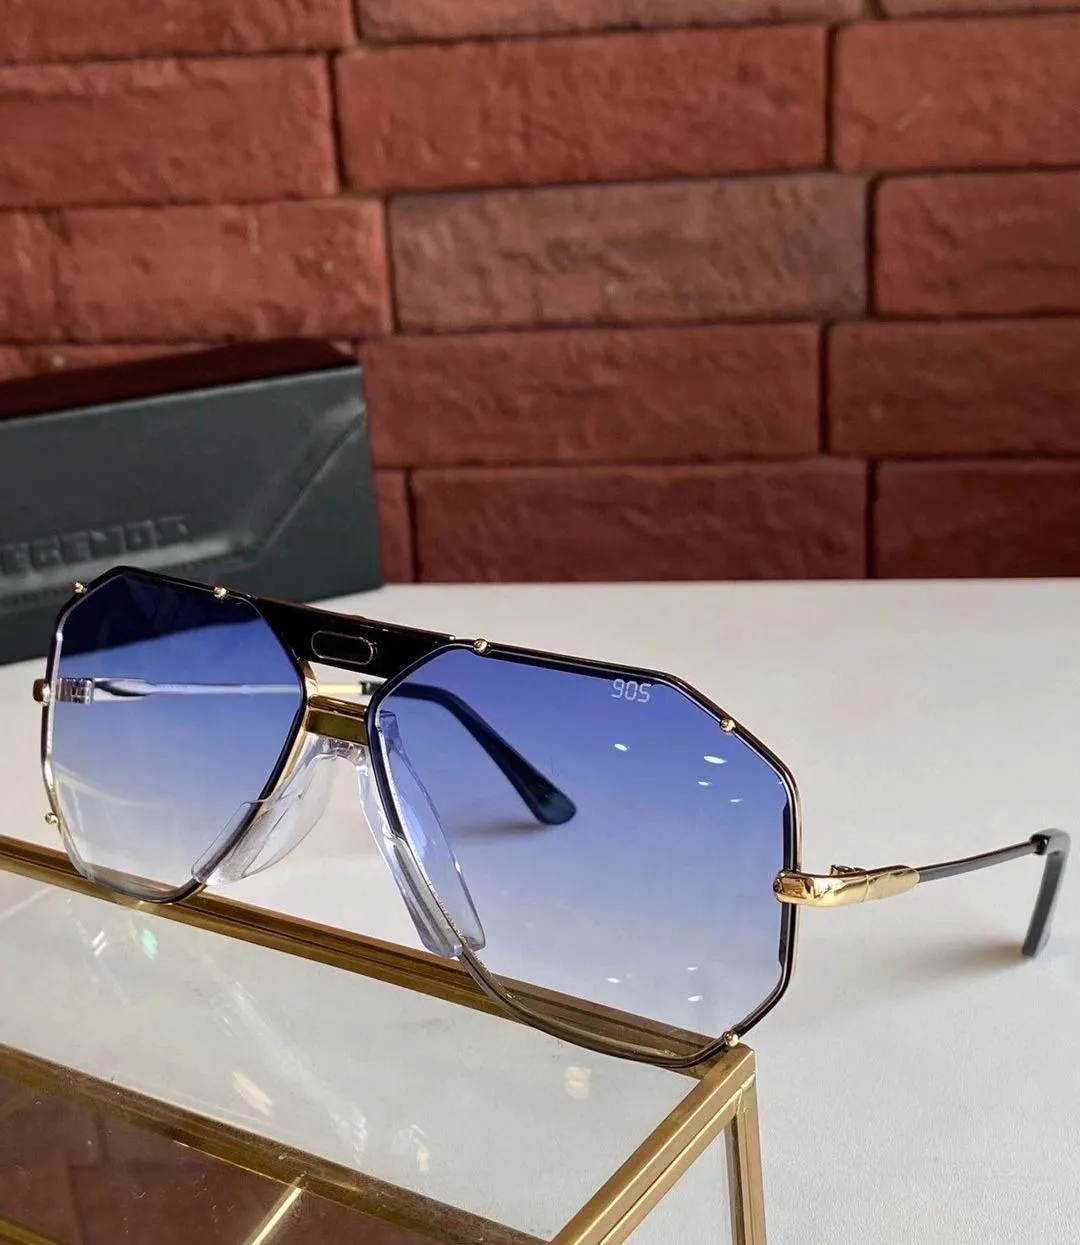 Vintage 905 Güneş Gözlüğü Altın Beyaz Çerçeve Mavi Degrade Lens Unisex Güneş Gözlükleri Shades UV400 Koruma Kutusu ile